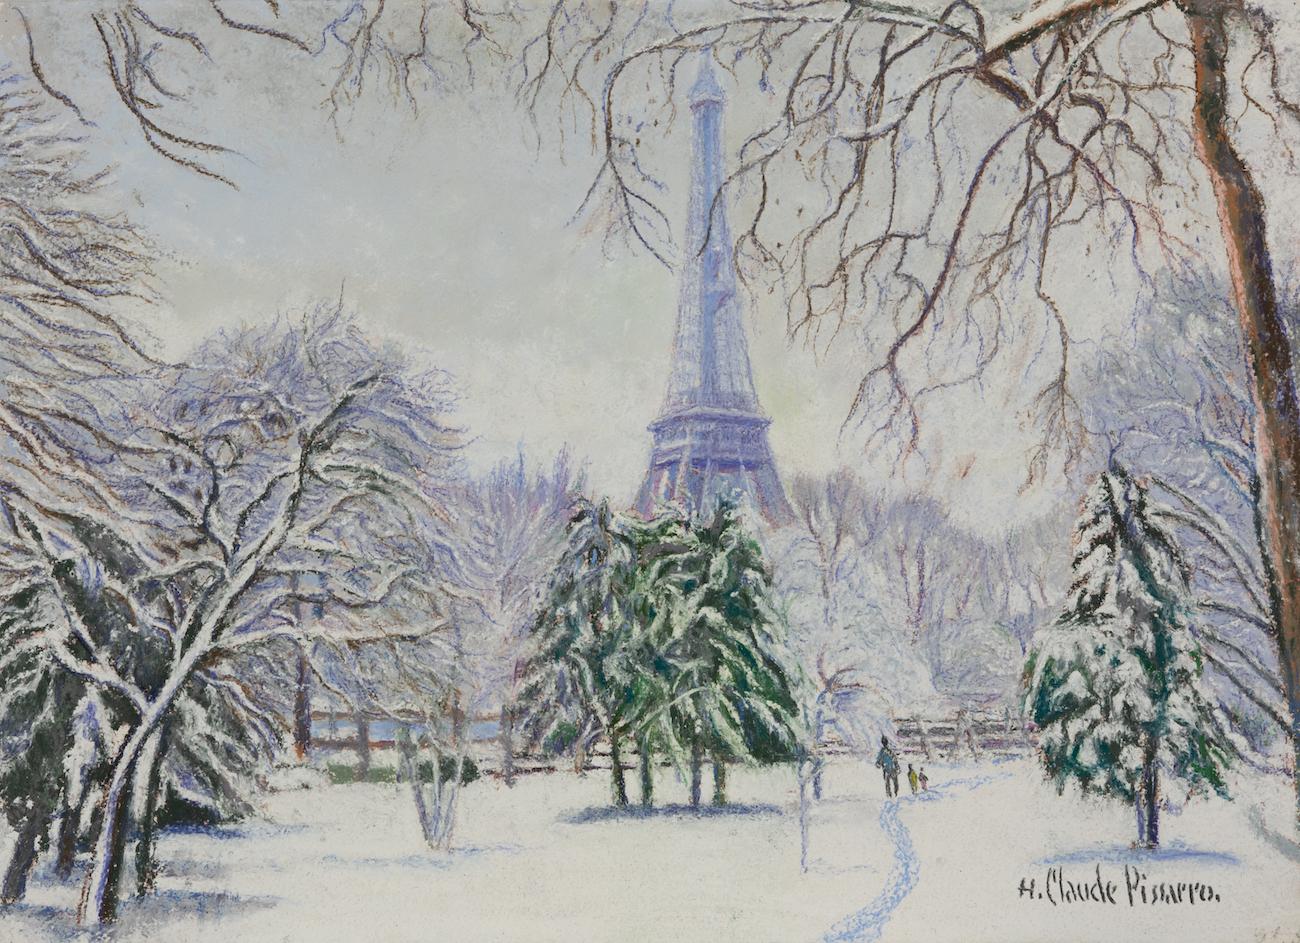 Neige Paris par H. Claude Pissarro - Scène de neige de Paris - Art de Hughes Claude Pissarro